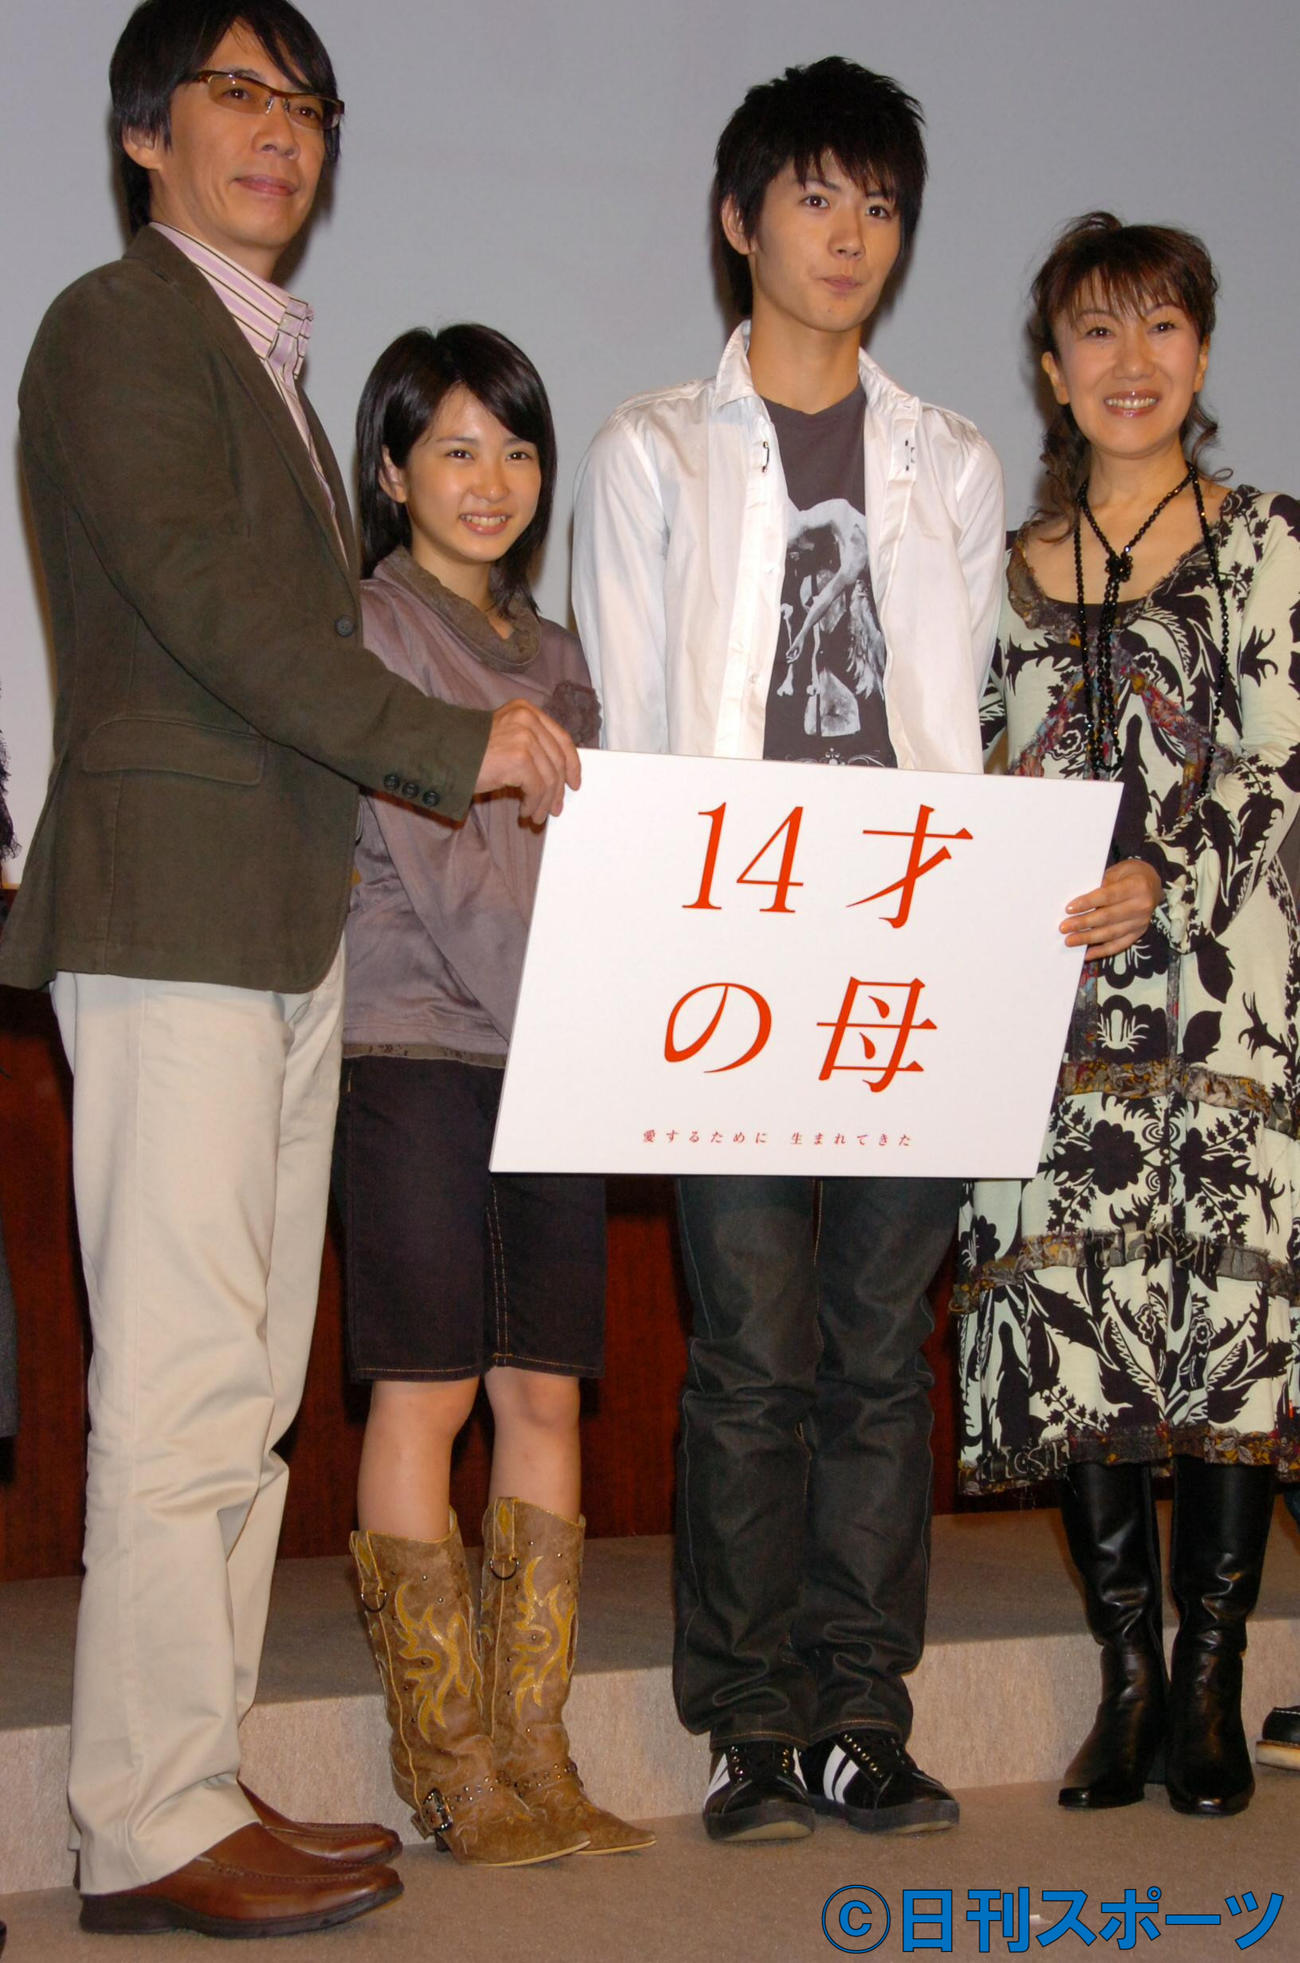 ドラマ「14才の母」　出演者左から生瀬勝久、14才の母を演じる志田未来、三浦春馬さん、室井滋（06年10月9日撮影）